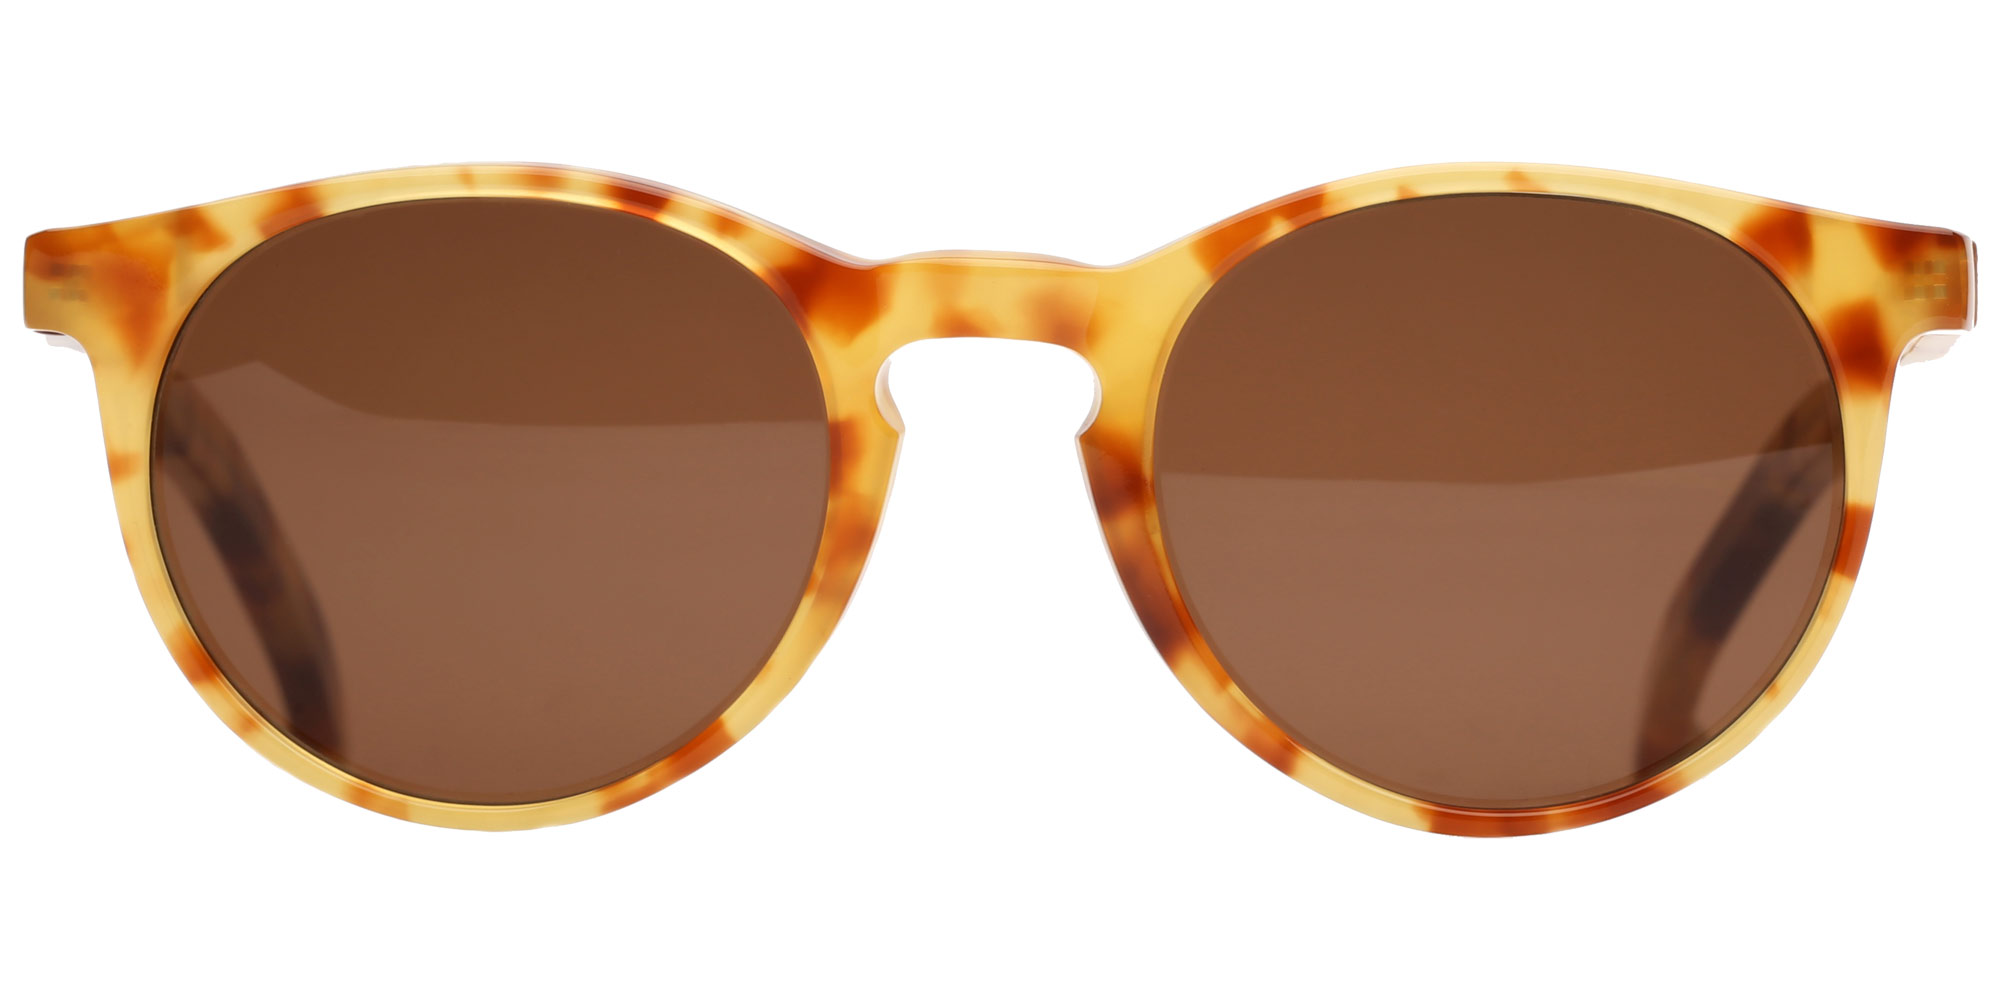 Солнцезащитные очки женские Brillenhof SUN K3013 коричневые